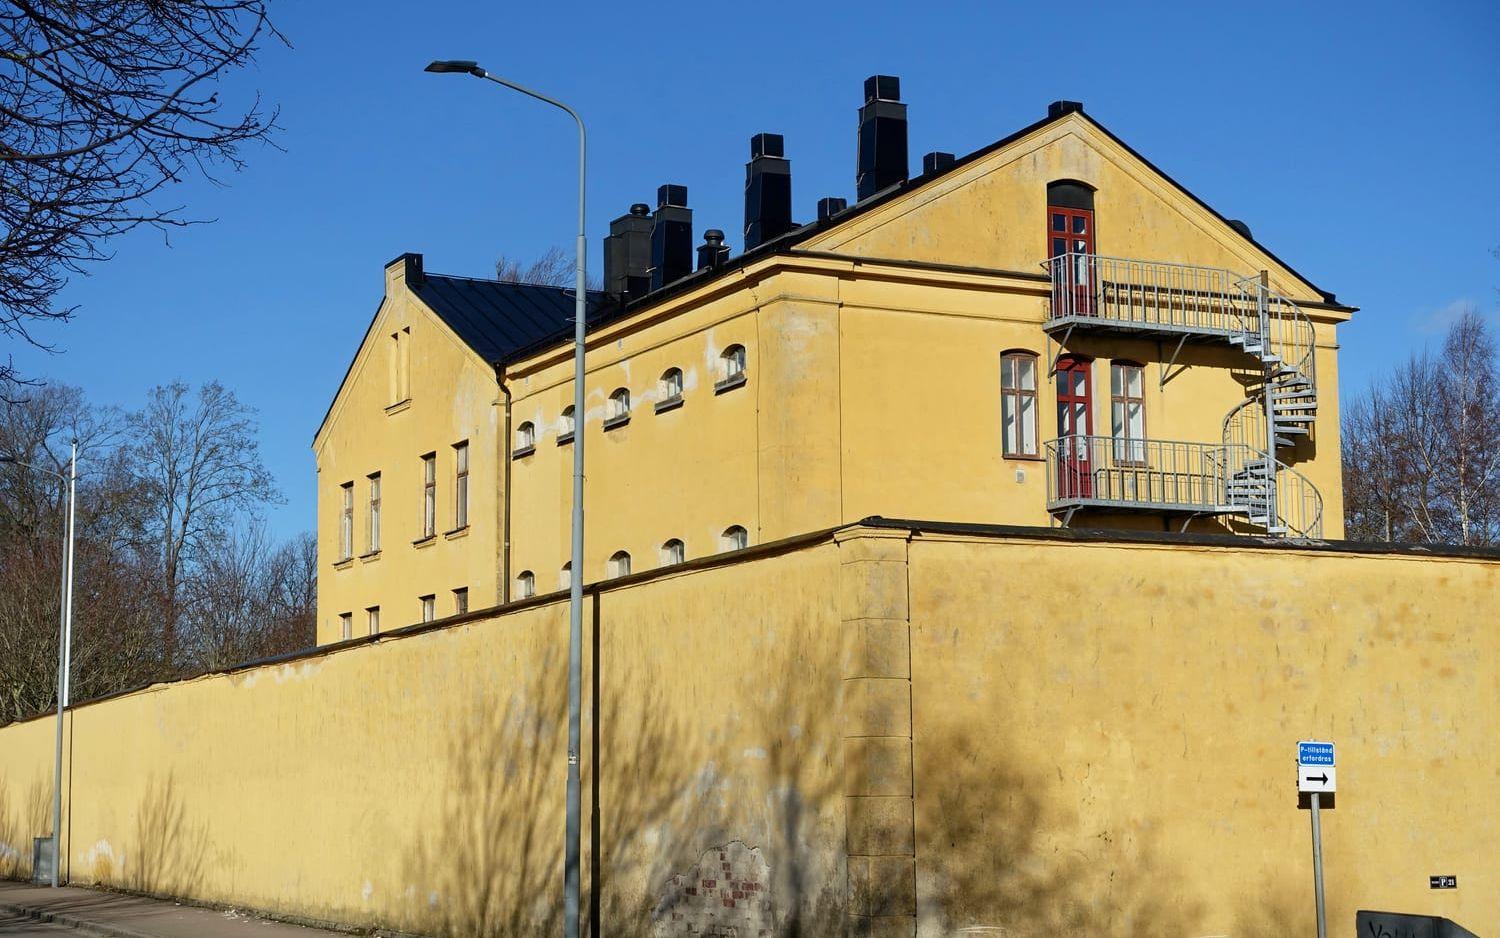 Det före detta fängelset på Södra vägen har 166 år på nacken. Arkitekten bakom bygget var Carl Fredrik Hjelm, som ritade de flesta svenska fängelserna i mitten på 1800-talet.